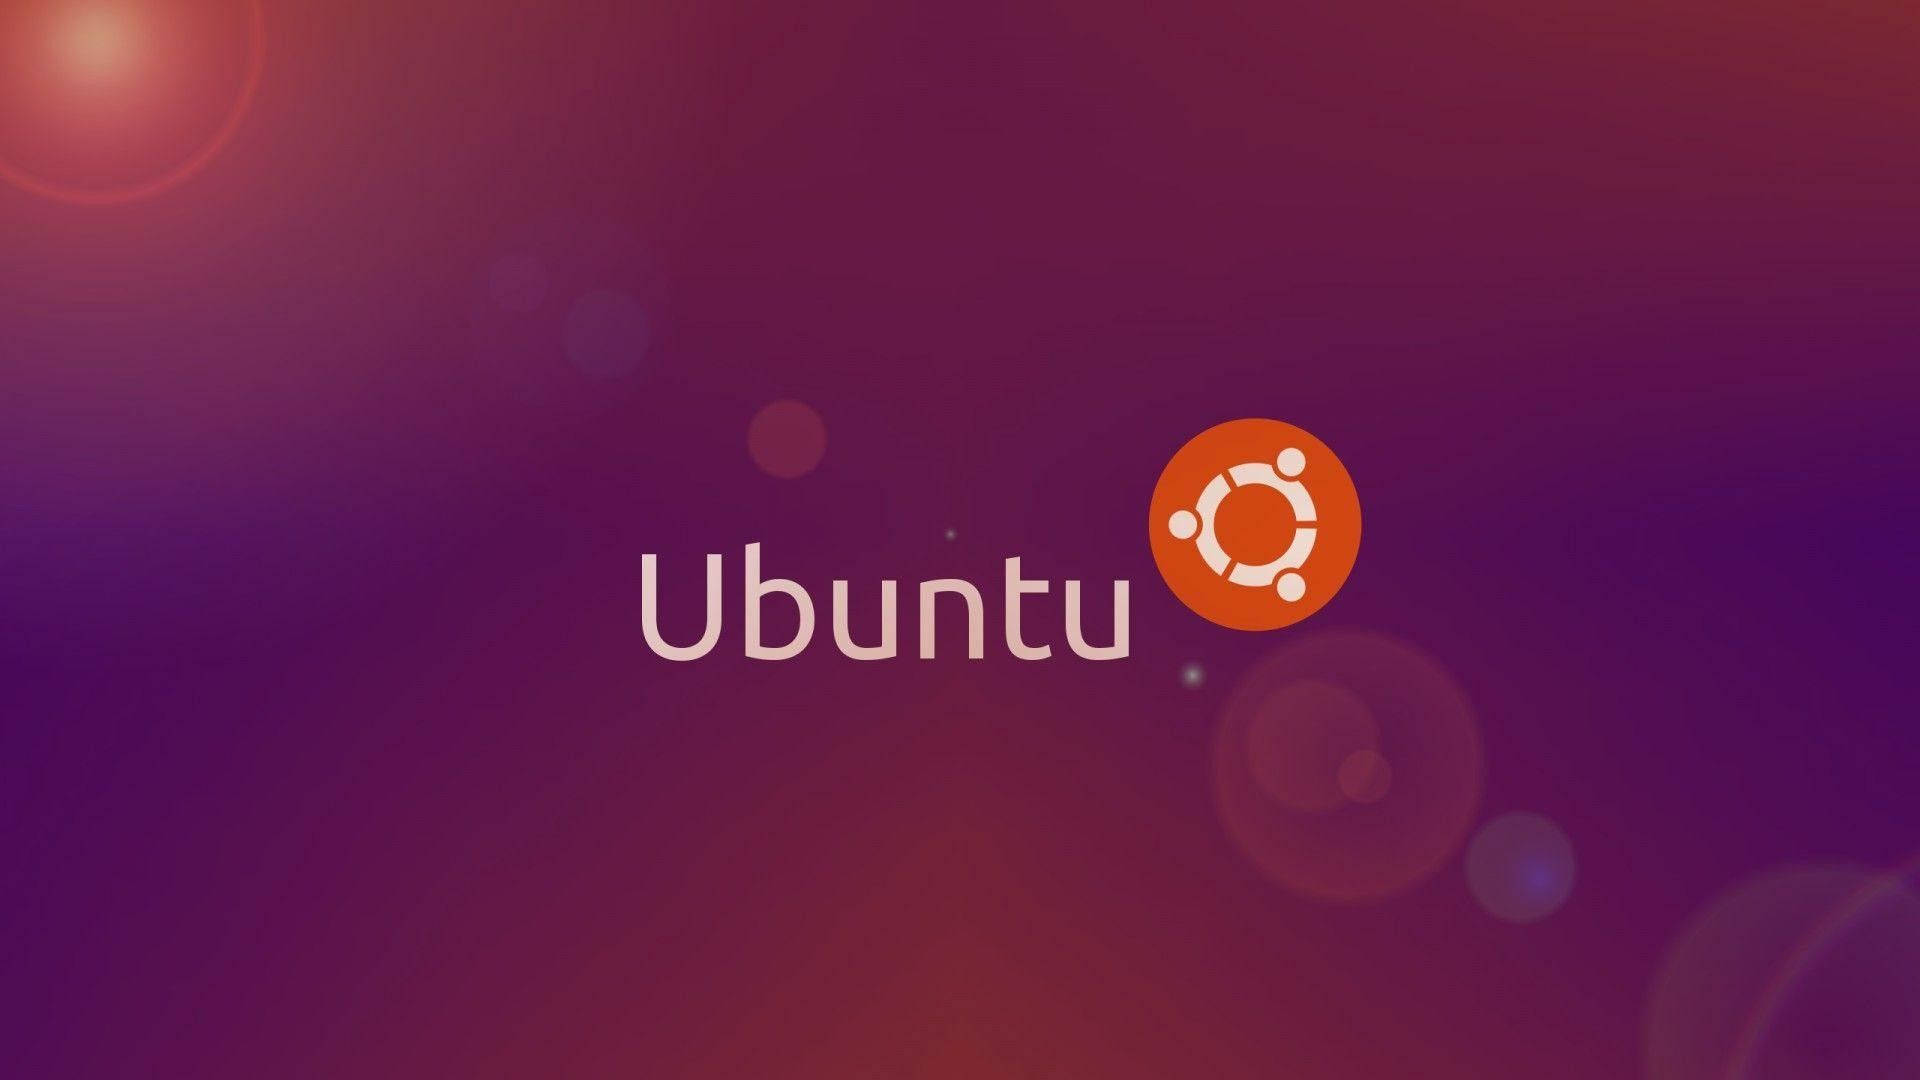 Ubuntu Background Photos